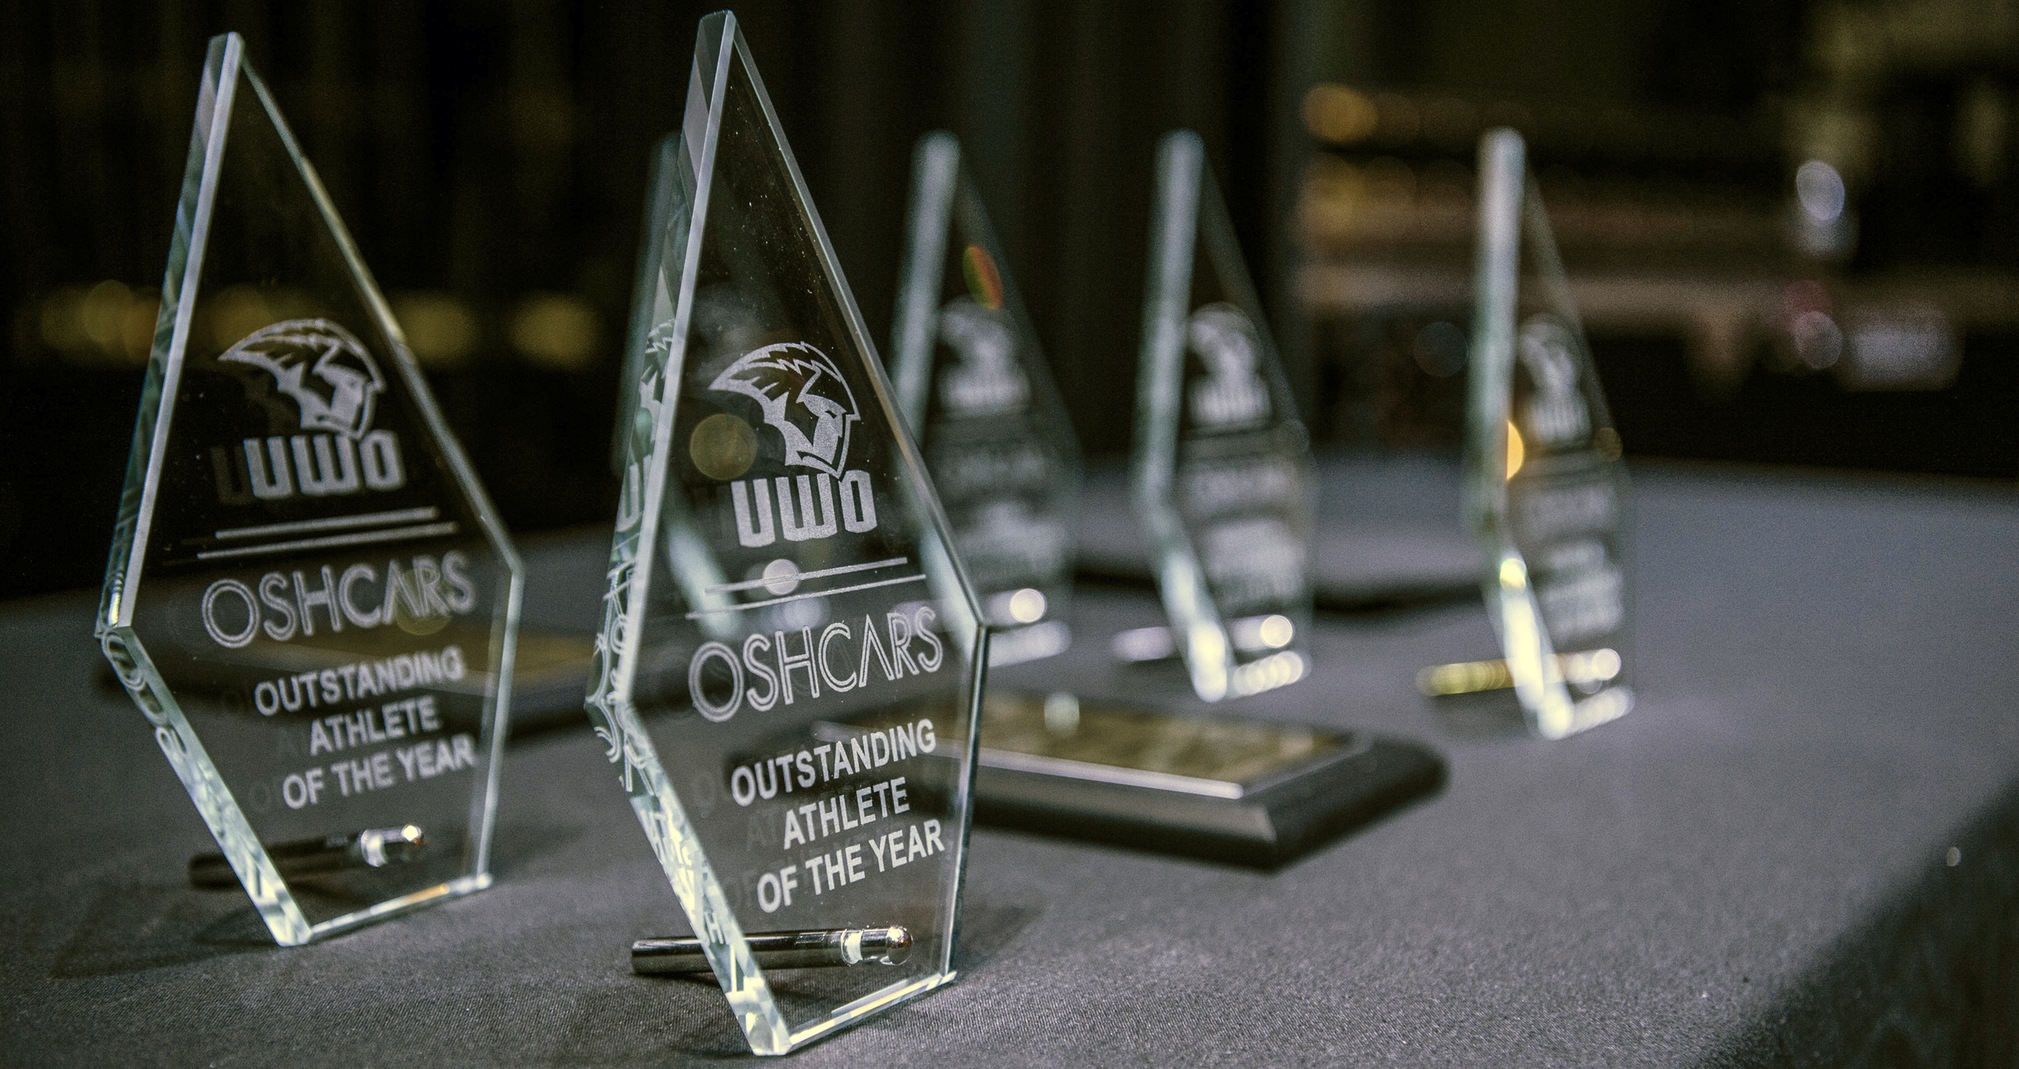 UW-Oshkosh Student-Athletes Honored At Oshcars Awards Event